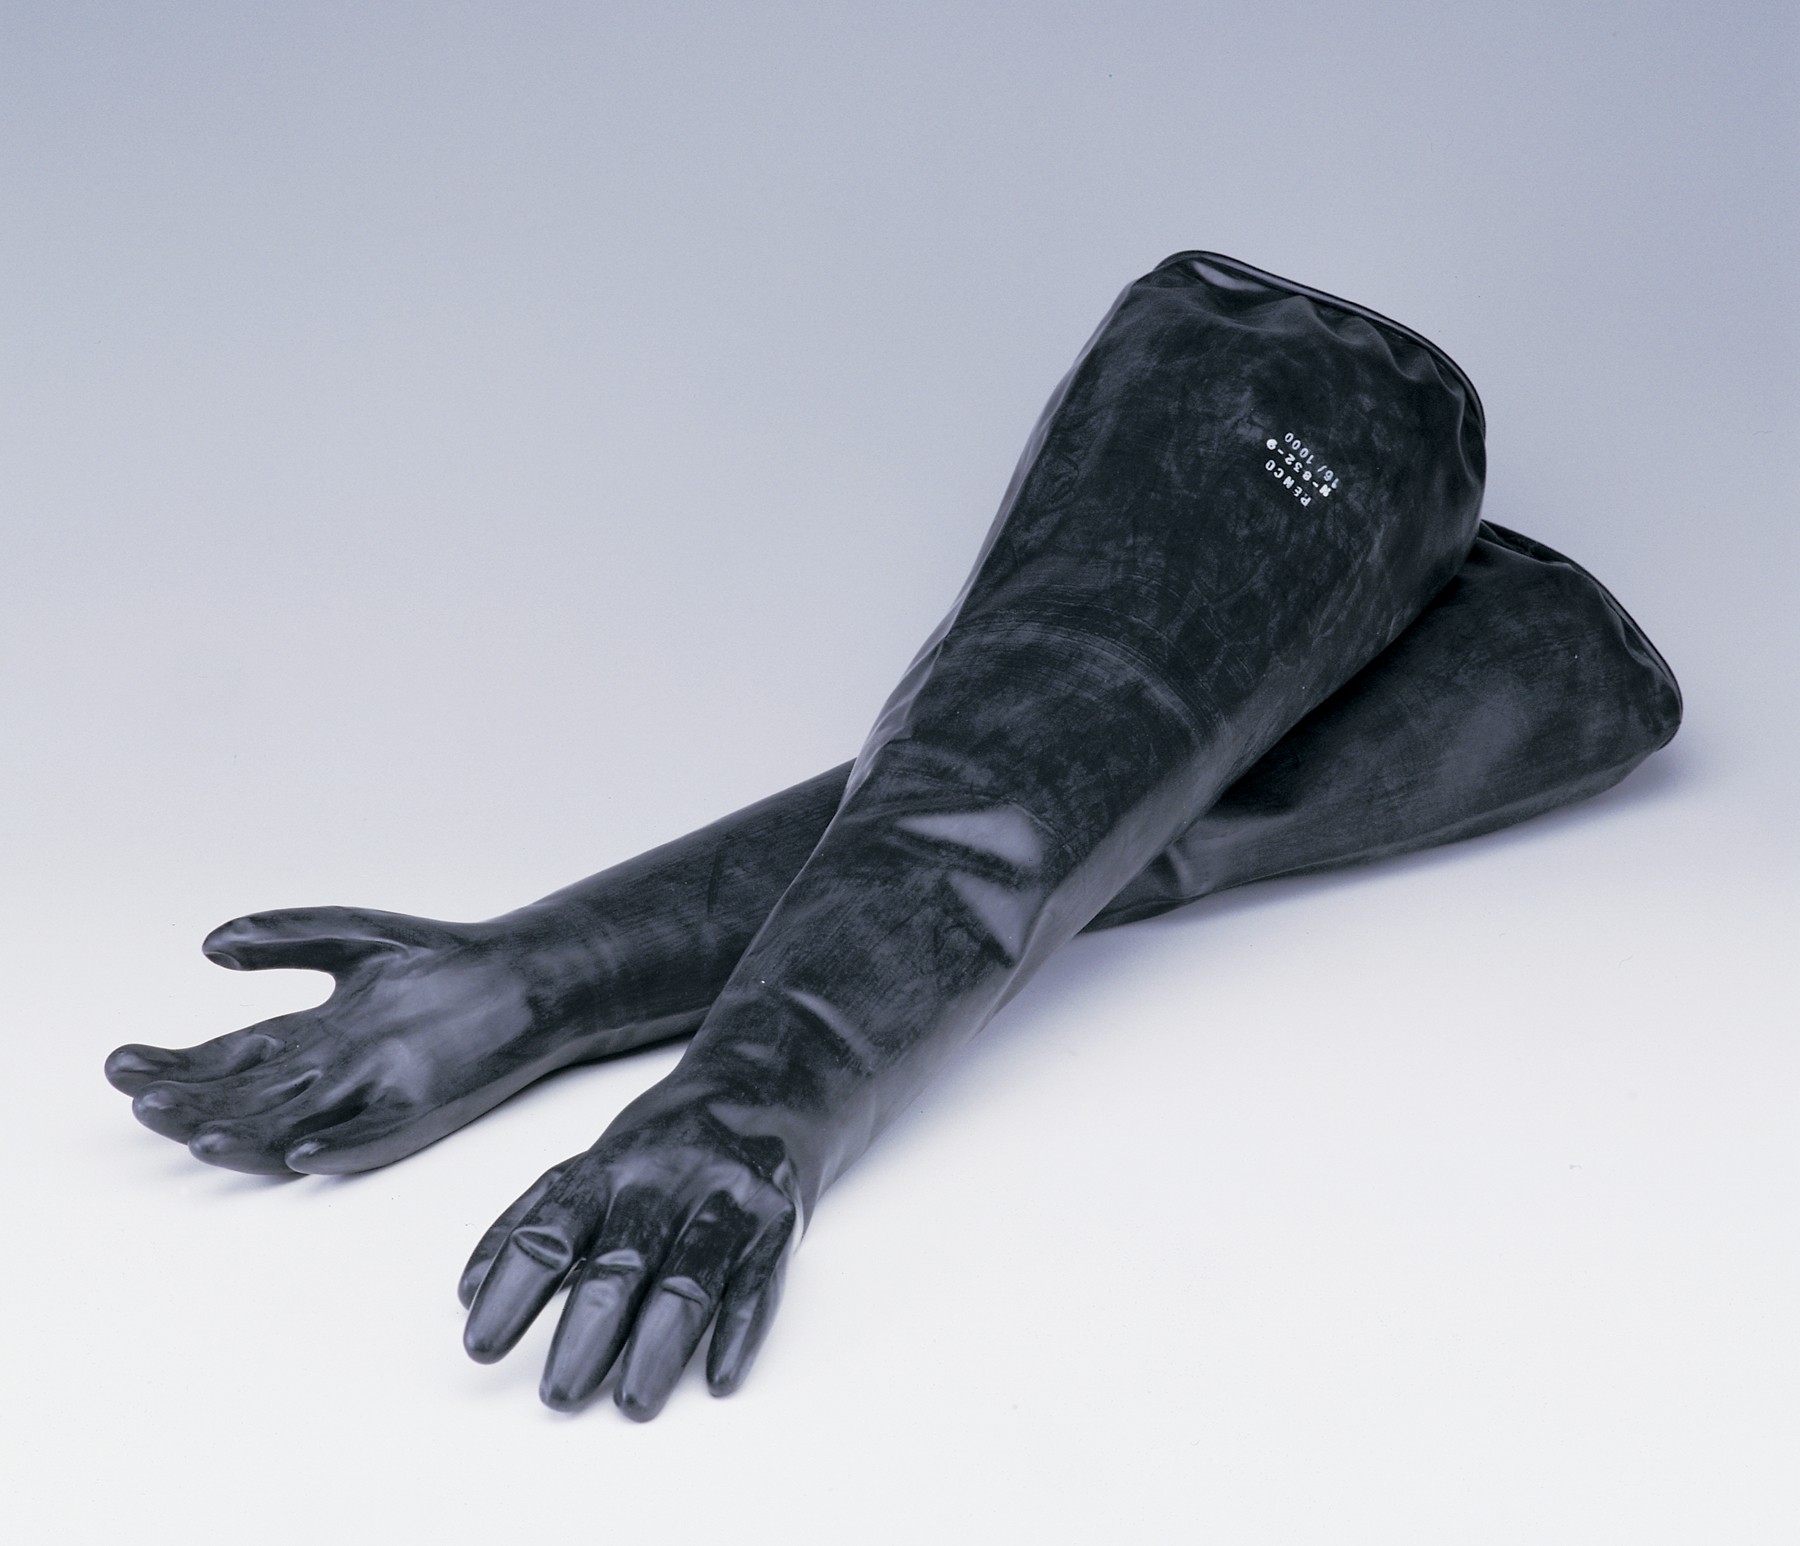 SP Bel-Art Glove Box Neoprene Sleeved Gloves; Size 9 